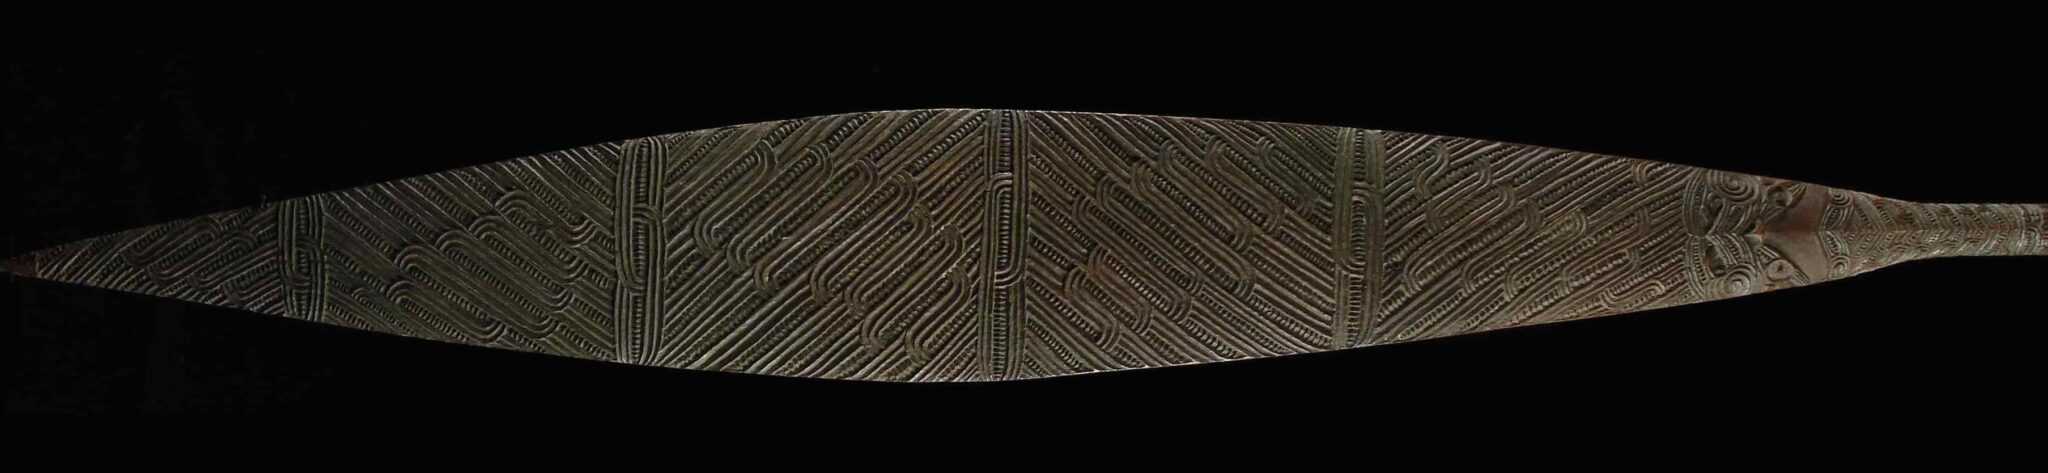 Maori paddle blade 2